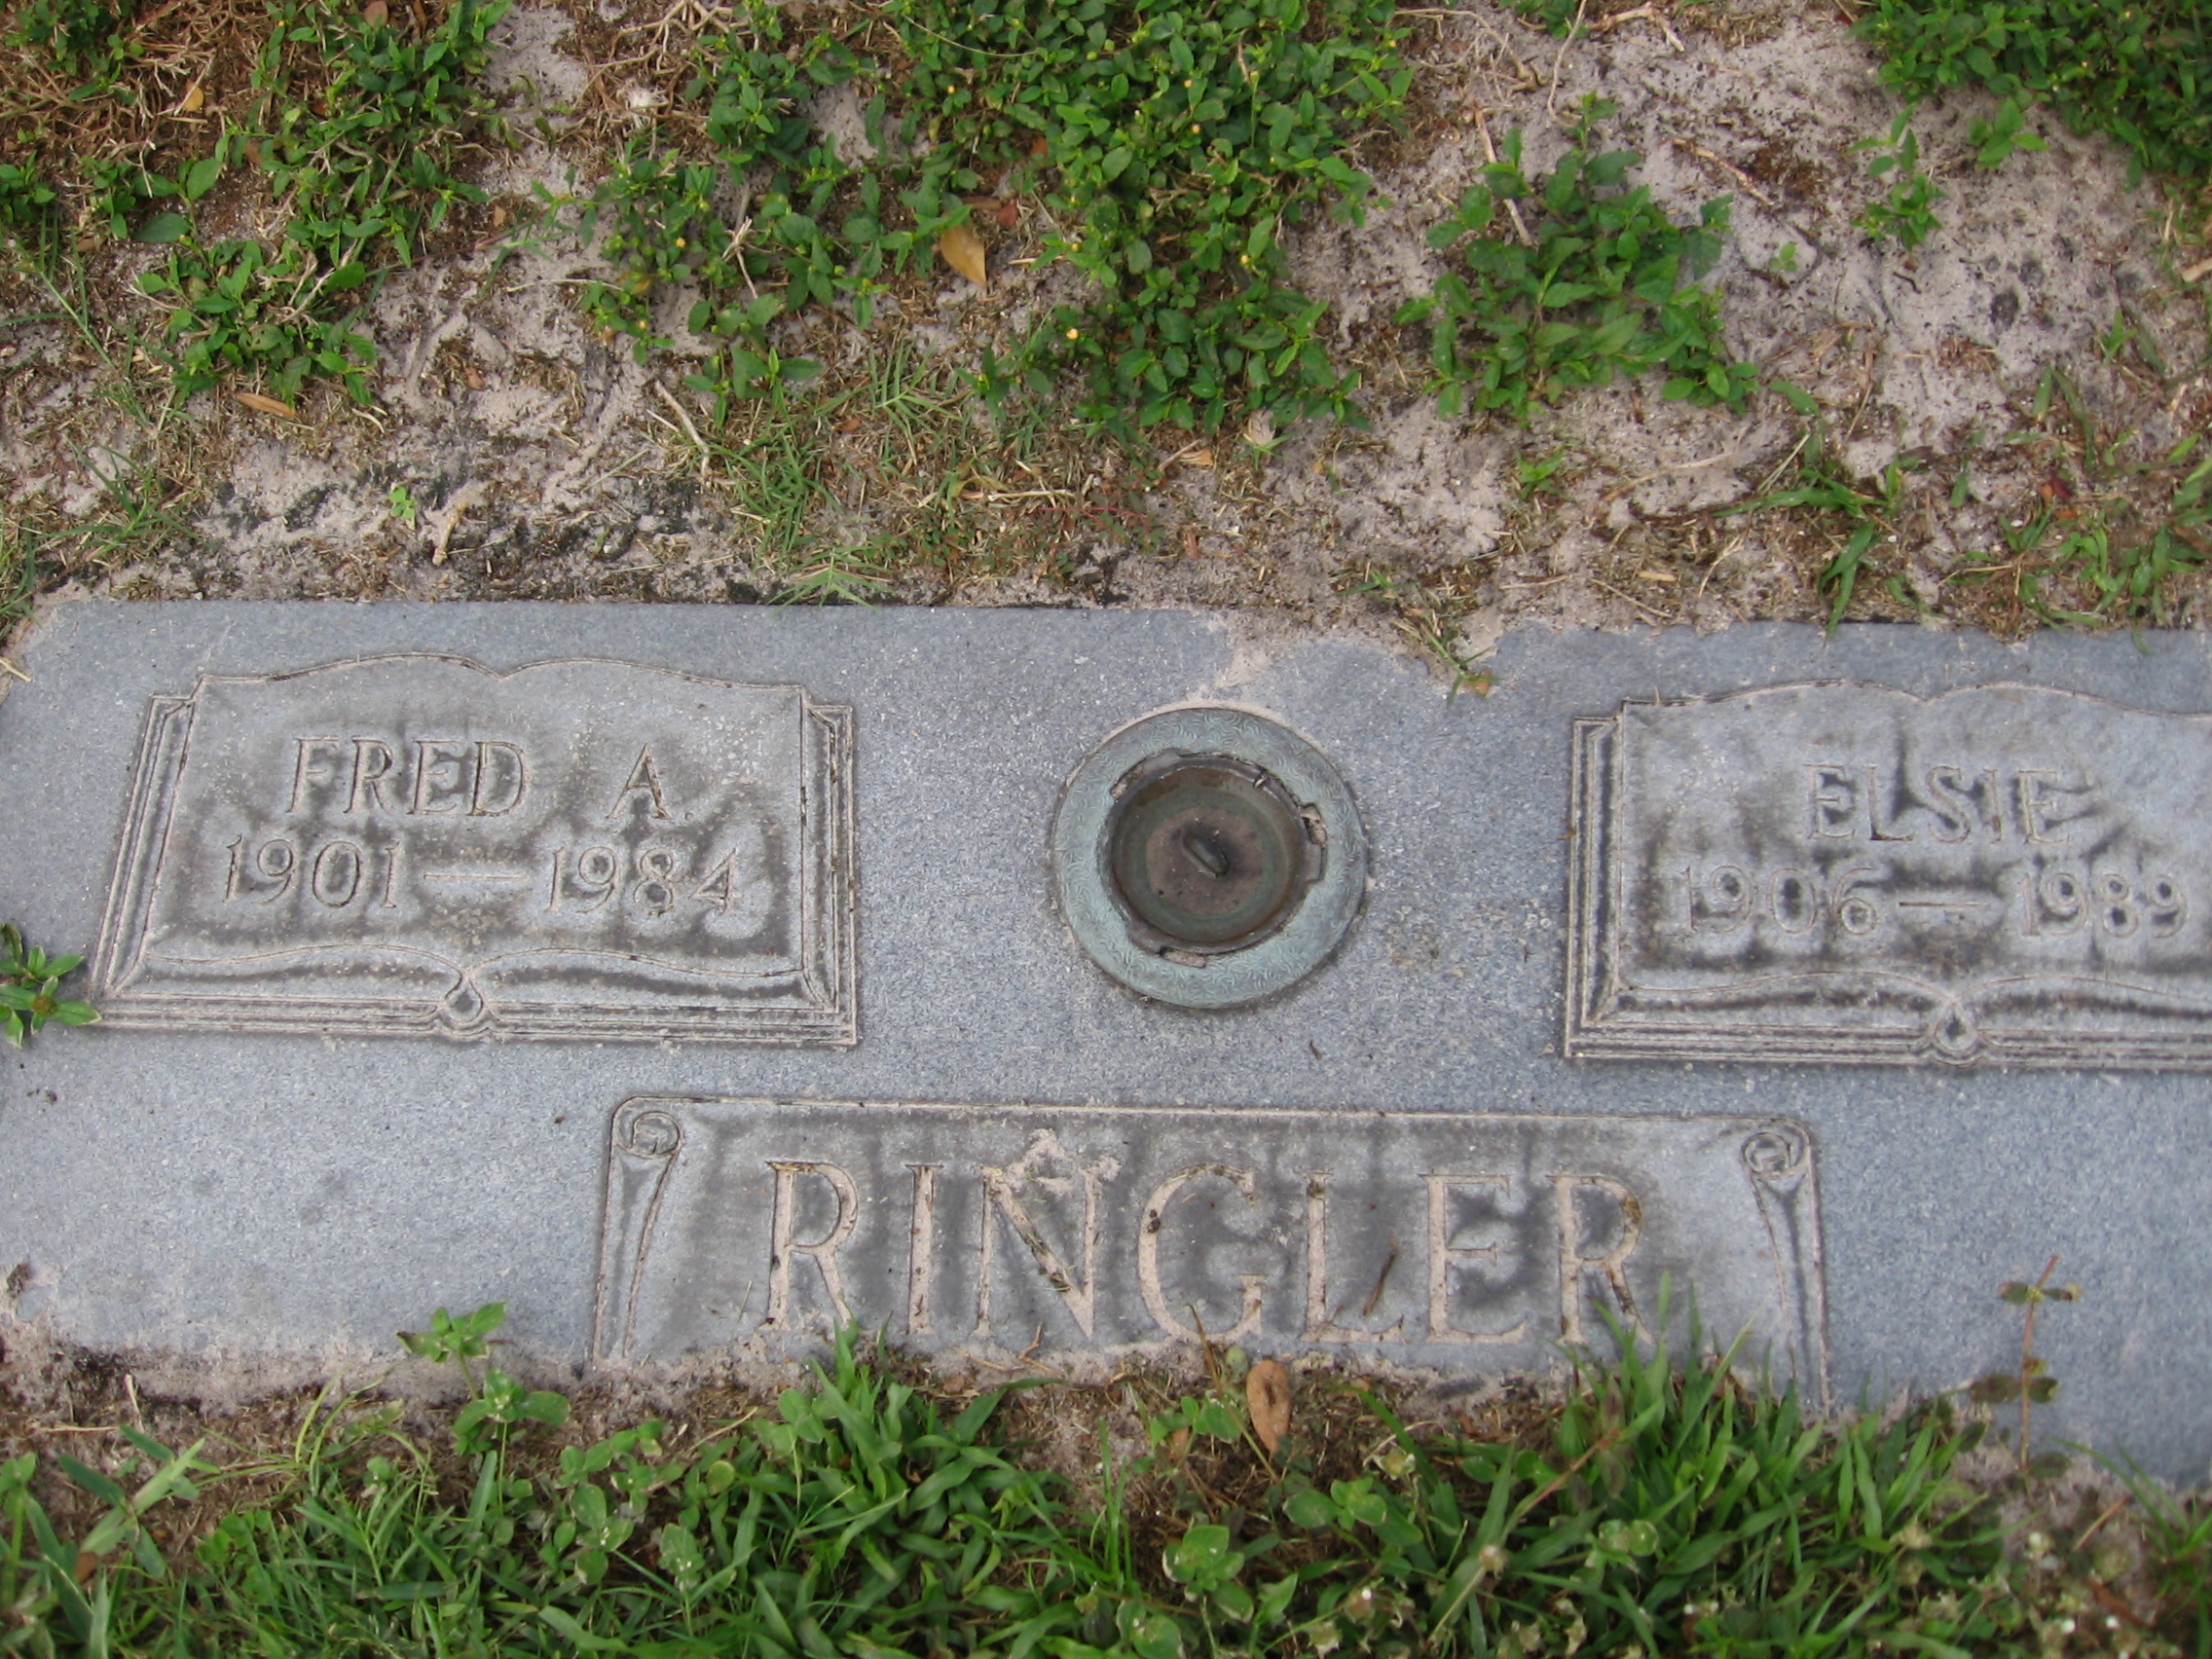 Fred A Ringler